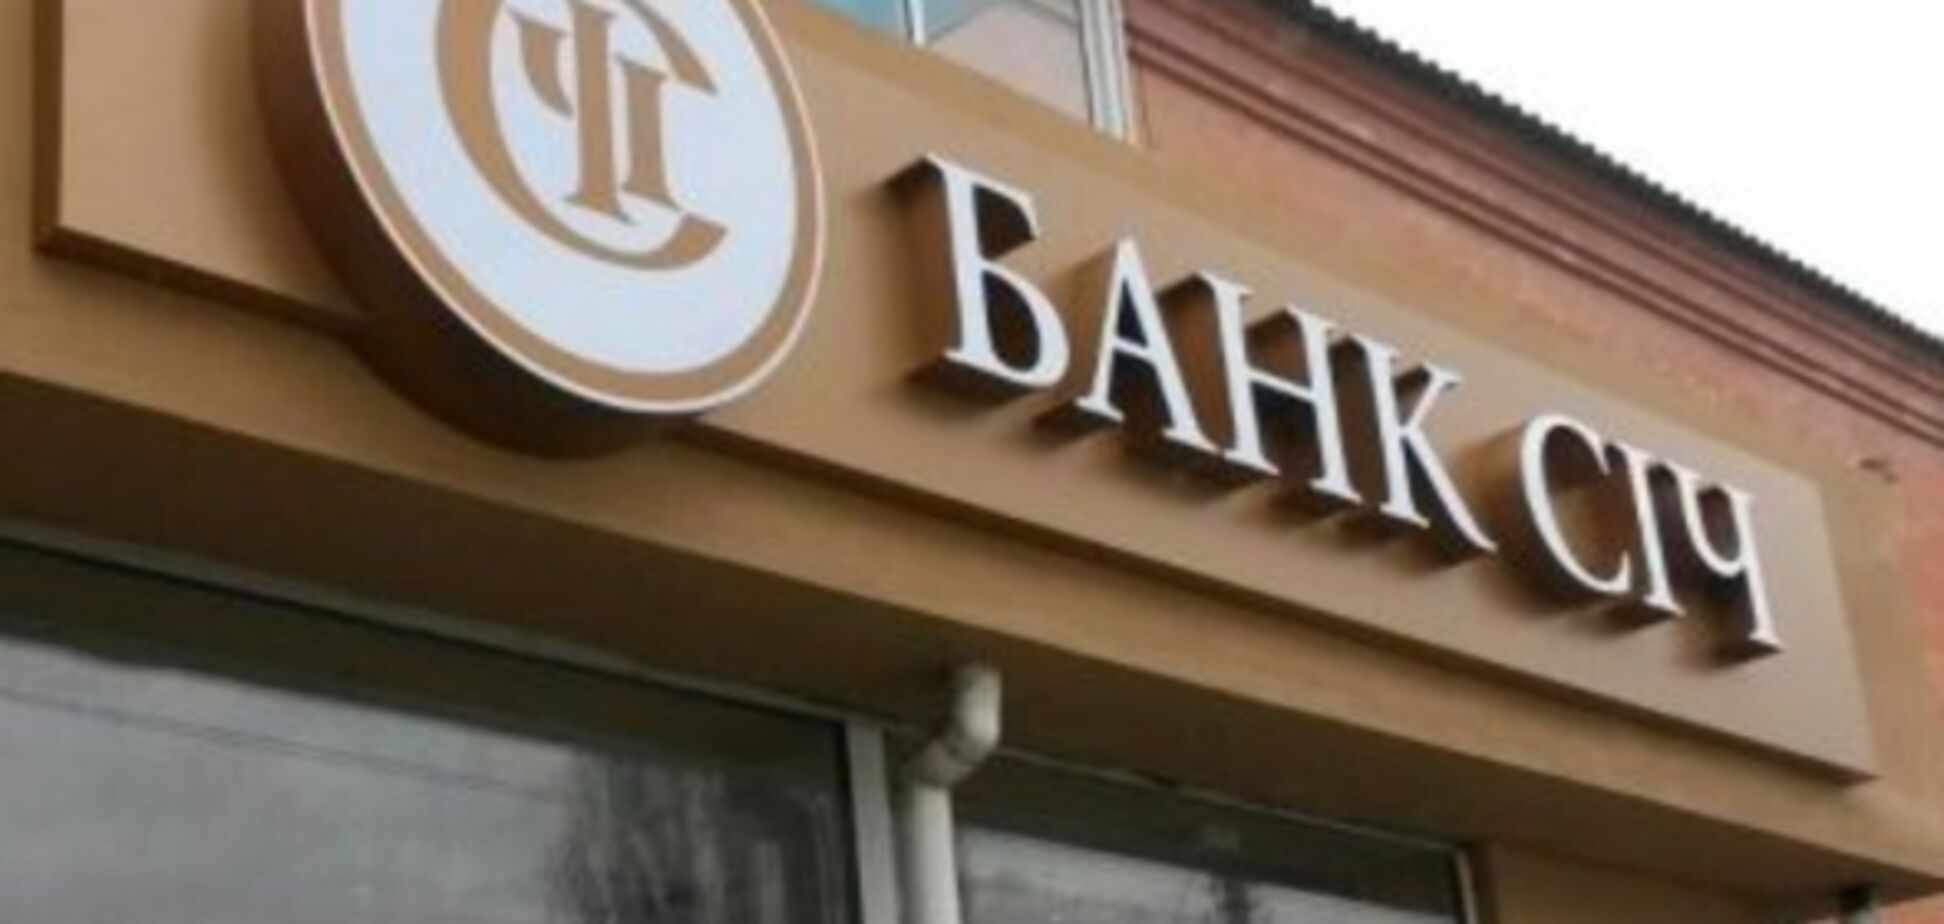 'Банк Сич' стал первым украинским банком, досрочно погасившим в полном объеме кредит рефинансирования НБУ